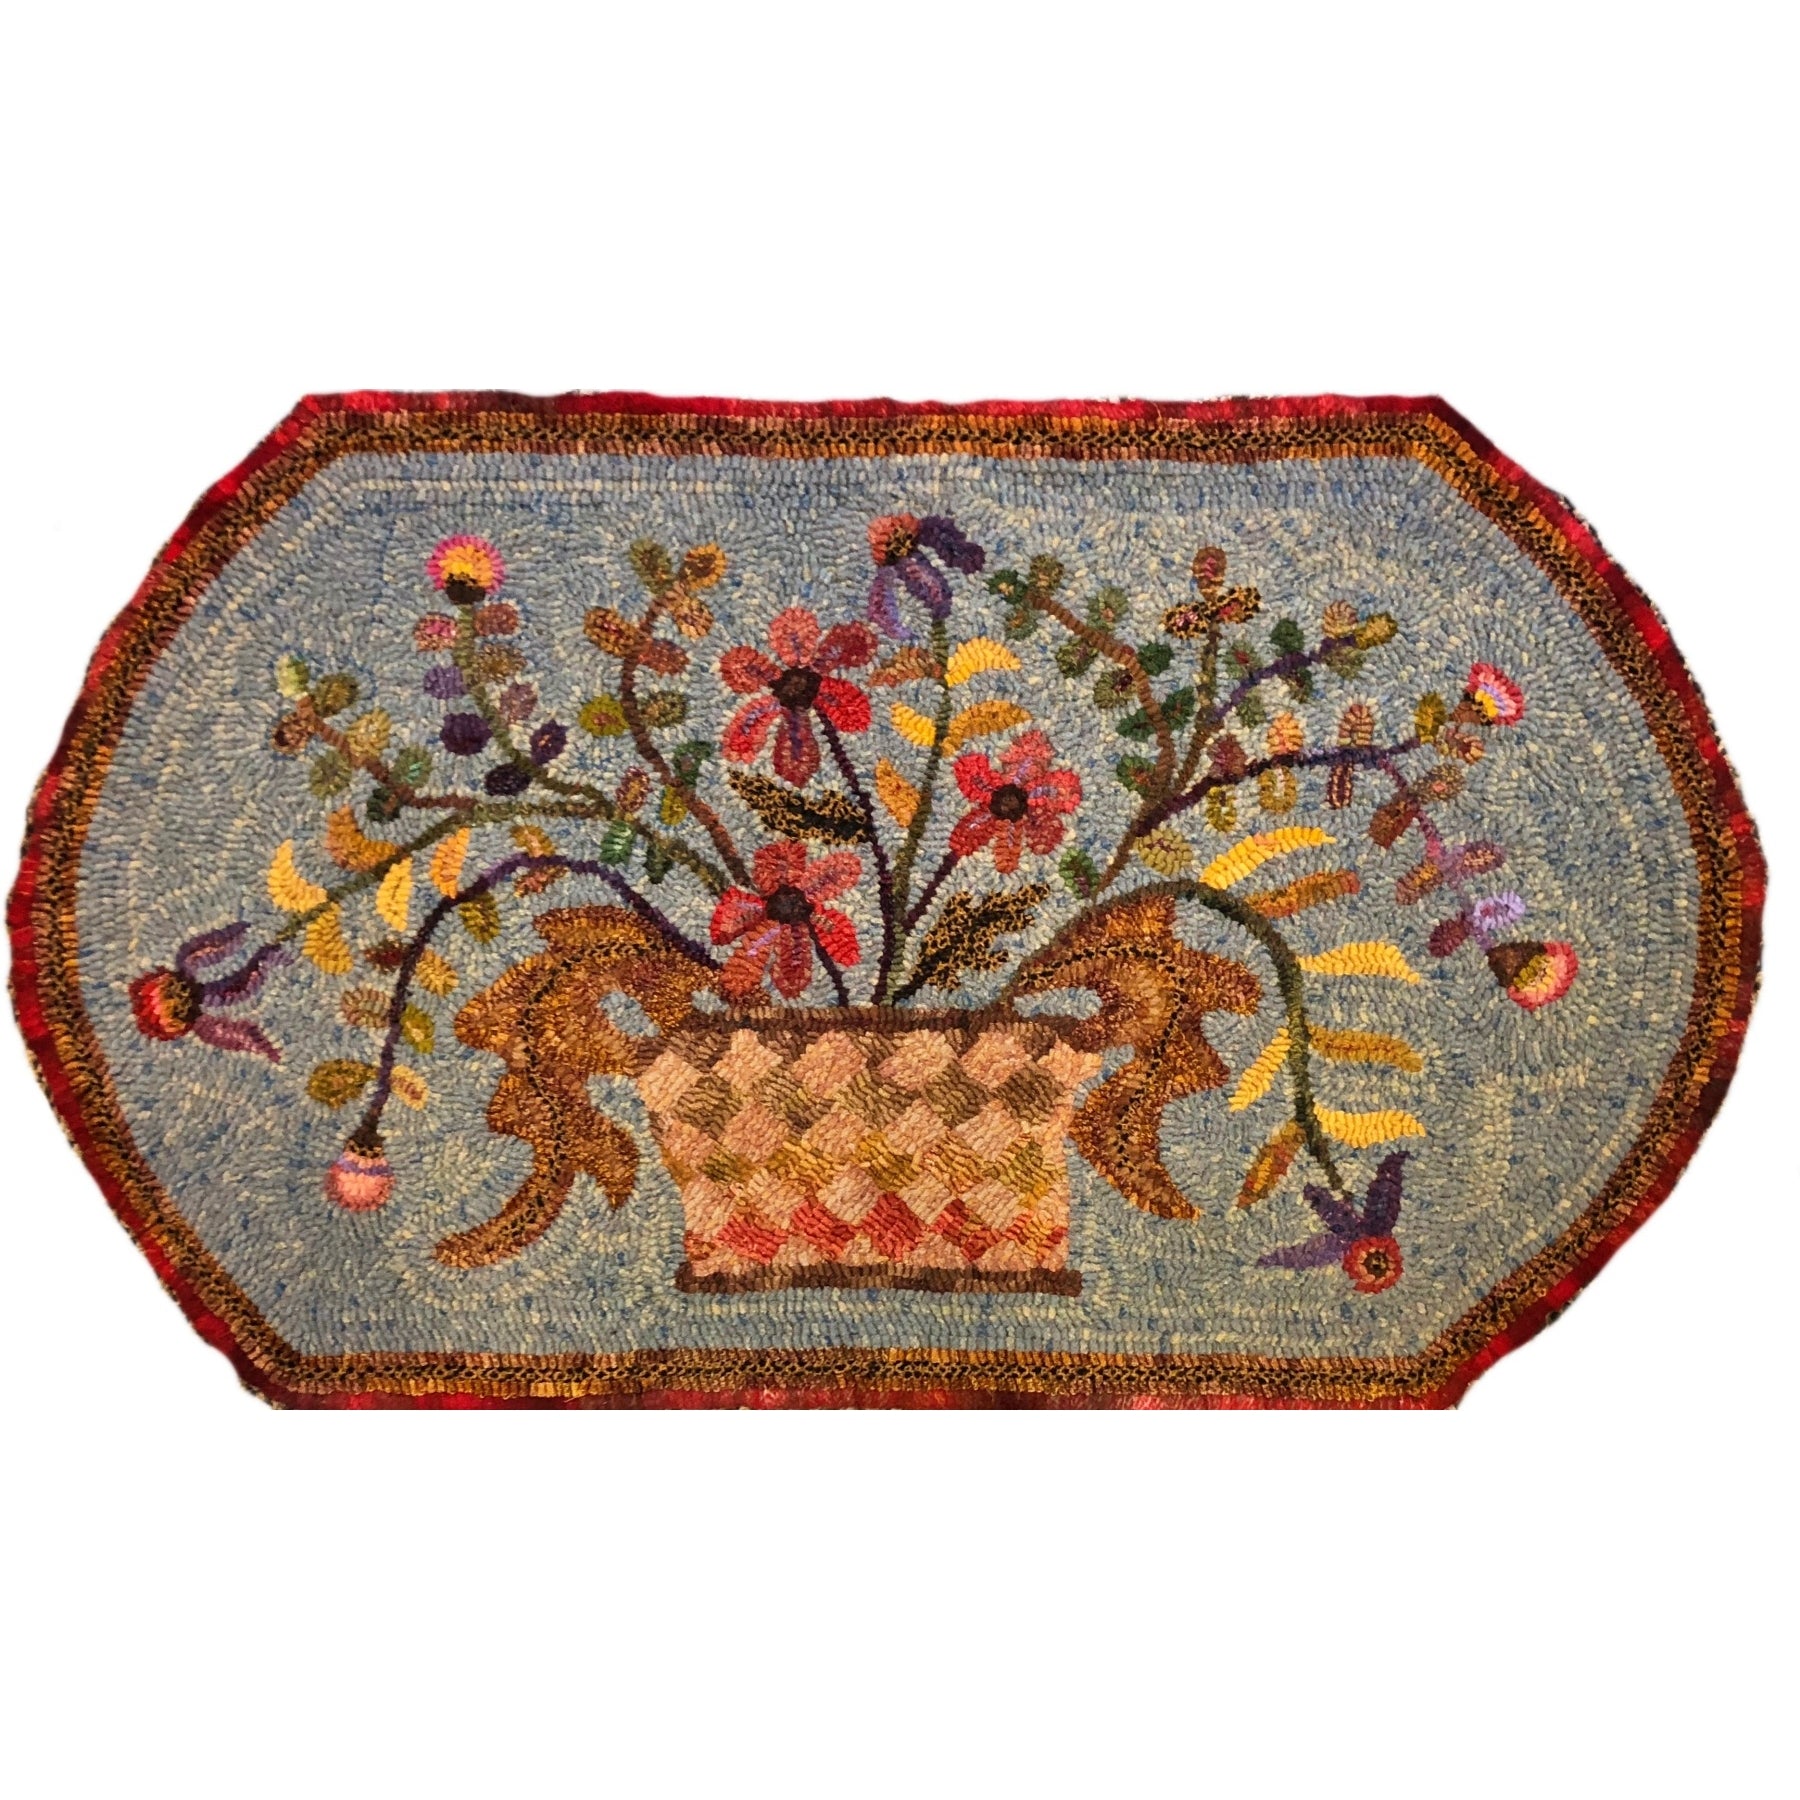 Basket Of Flowers, rug hooked by Terese Macedo